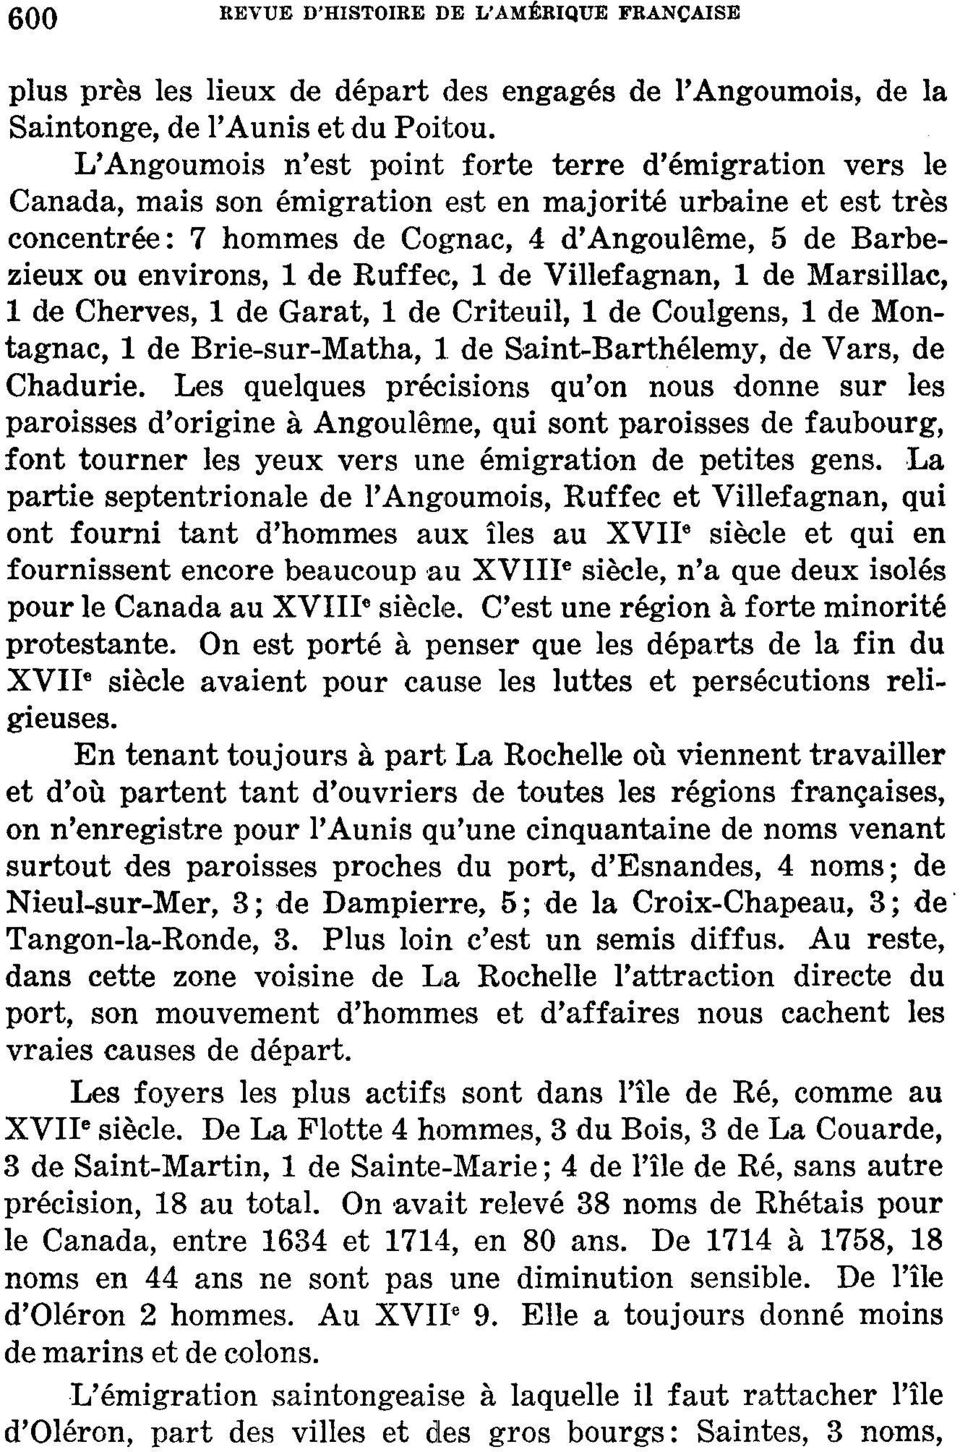 de Ruffec, 1 de Villefagnan, 1 de Marsillac, 1 de Cherves, 1 de Garât, 1 de Criteuil, 1 de Coulgens, 1 de Montagnac, 1 de Brie-sur-Matha, 1 de Saint-Barthélémy, de Vars, de Chadurie.